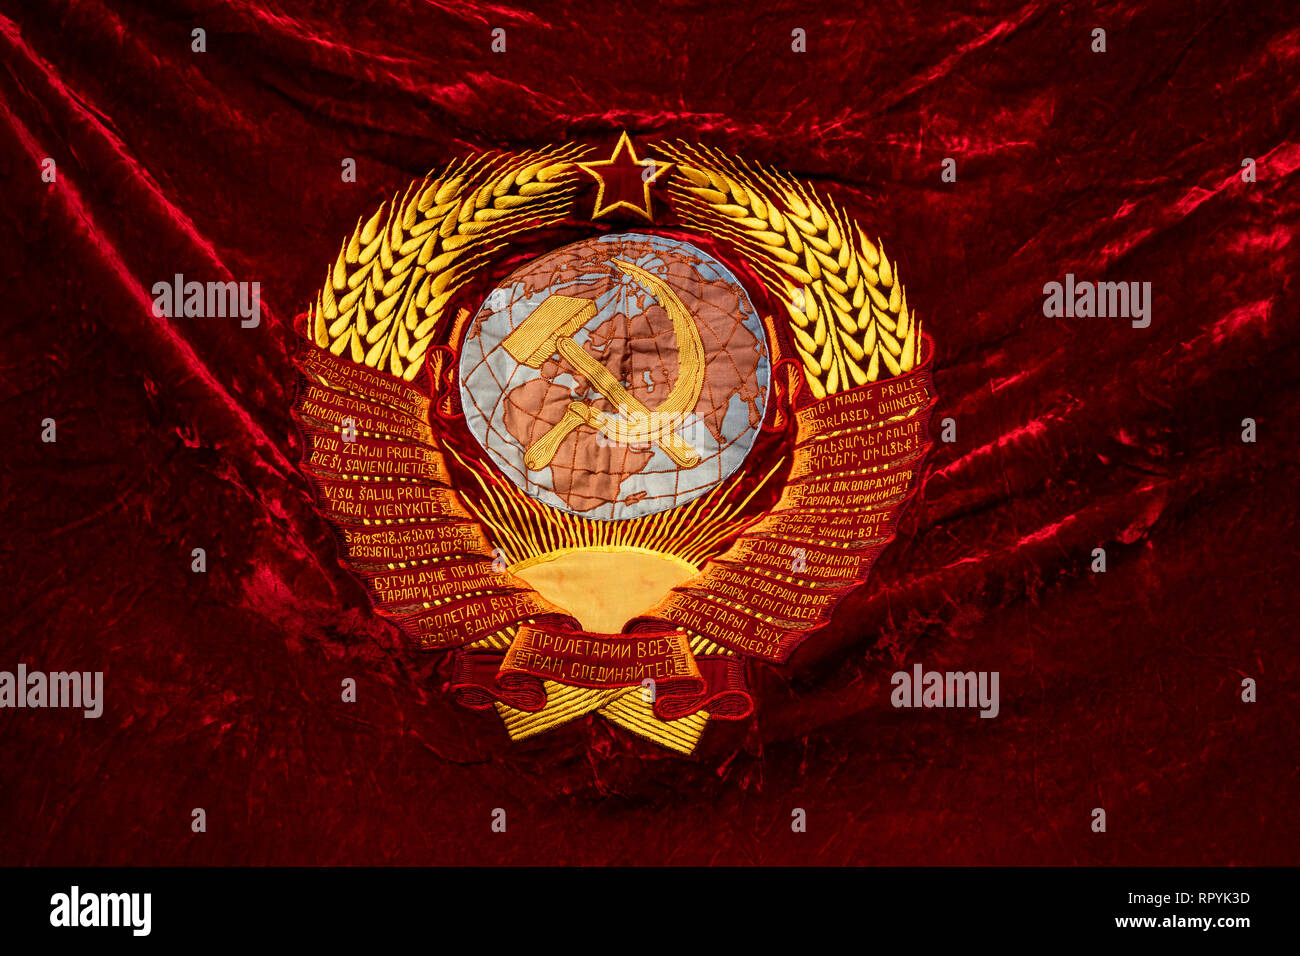 Moskau, Russland. 23. Februar 2019: eine Fahne mit dem Emblem der UDSSR in einem März der Russischen Kommunistischen Partei in Moskau den 101. Jahrestag der Errichtung der Roten Armee und Marine auf Verteidiger des Vaterlandes Tag Credit: Nikolay Winokurow/Alamy Leben Nachrichten zu markieren Stockfoto